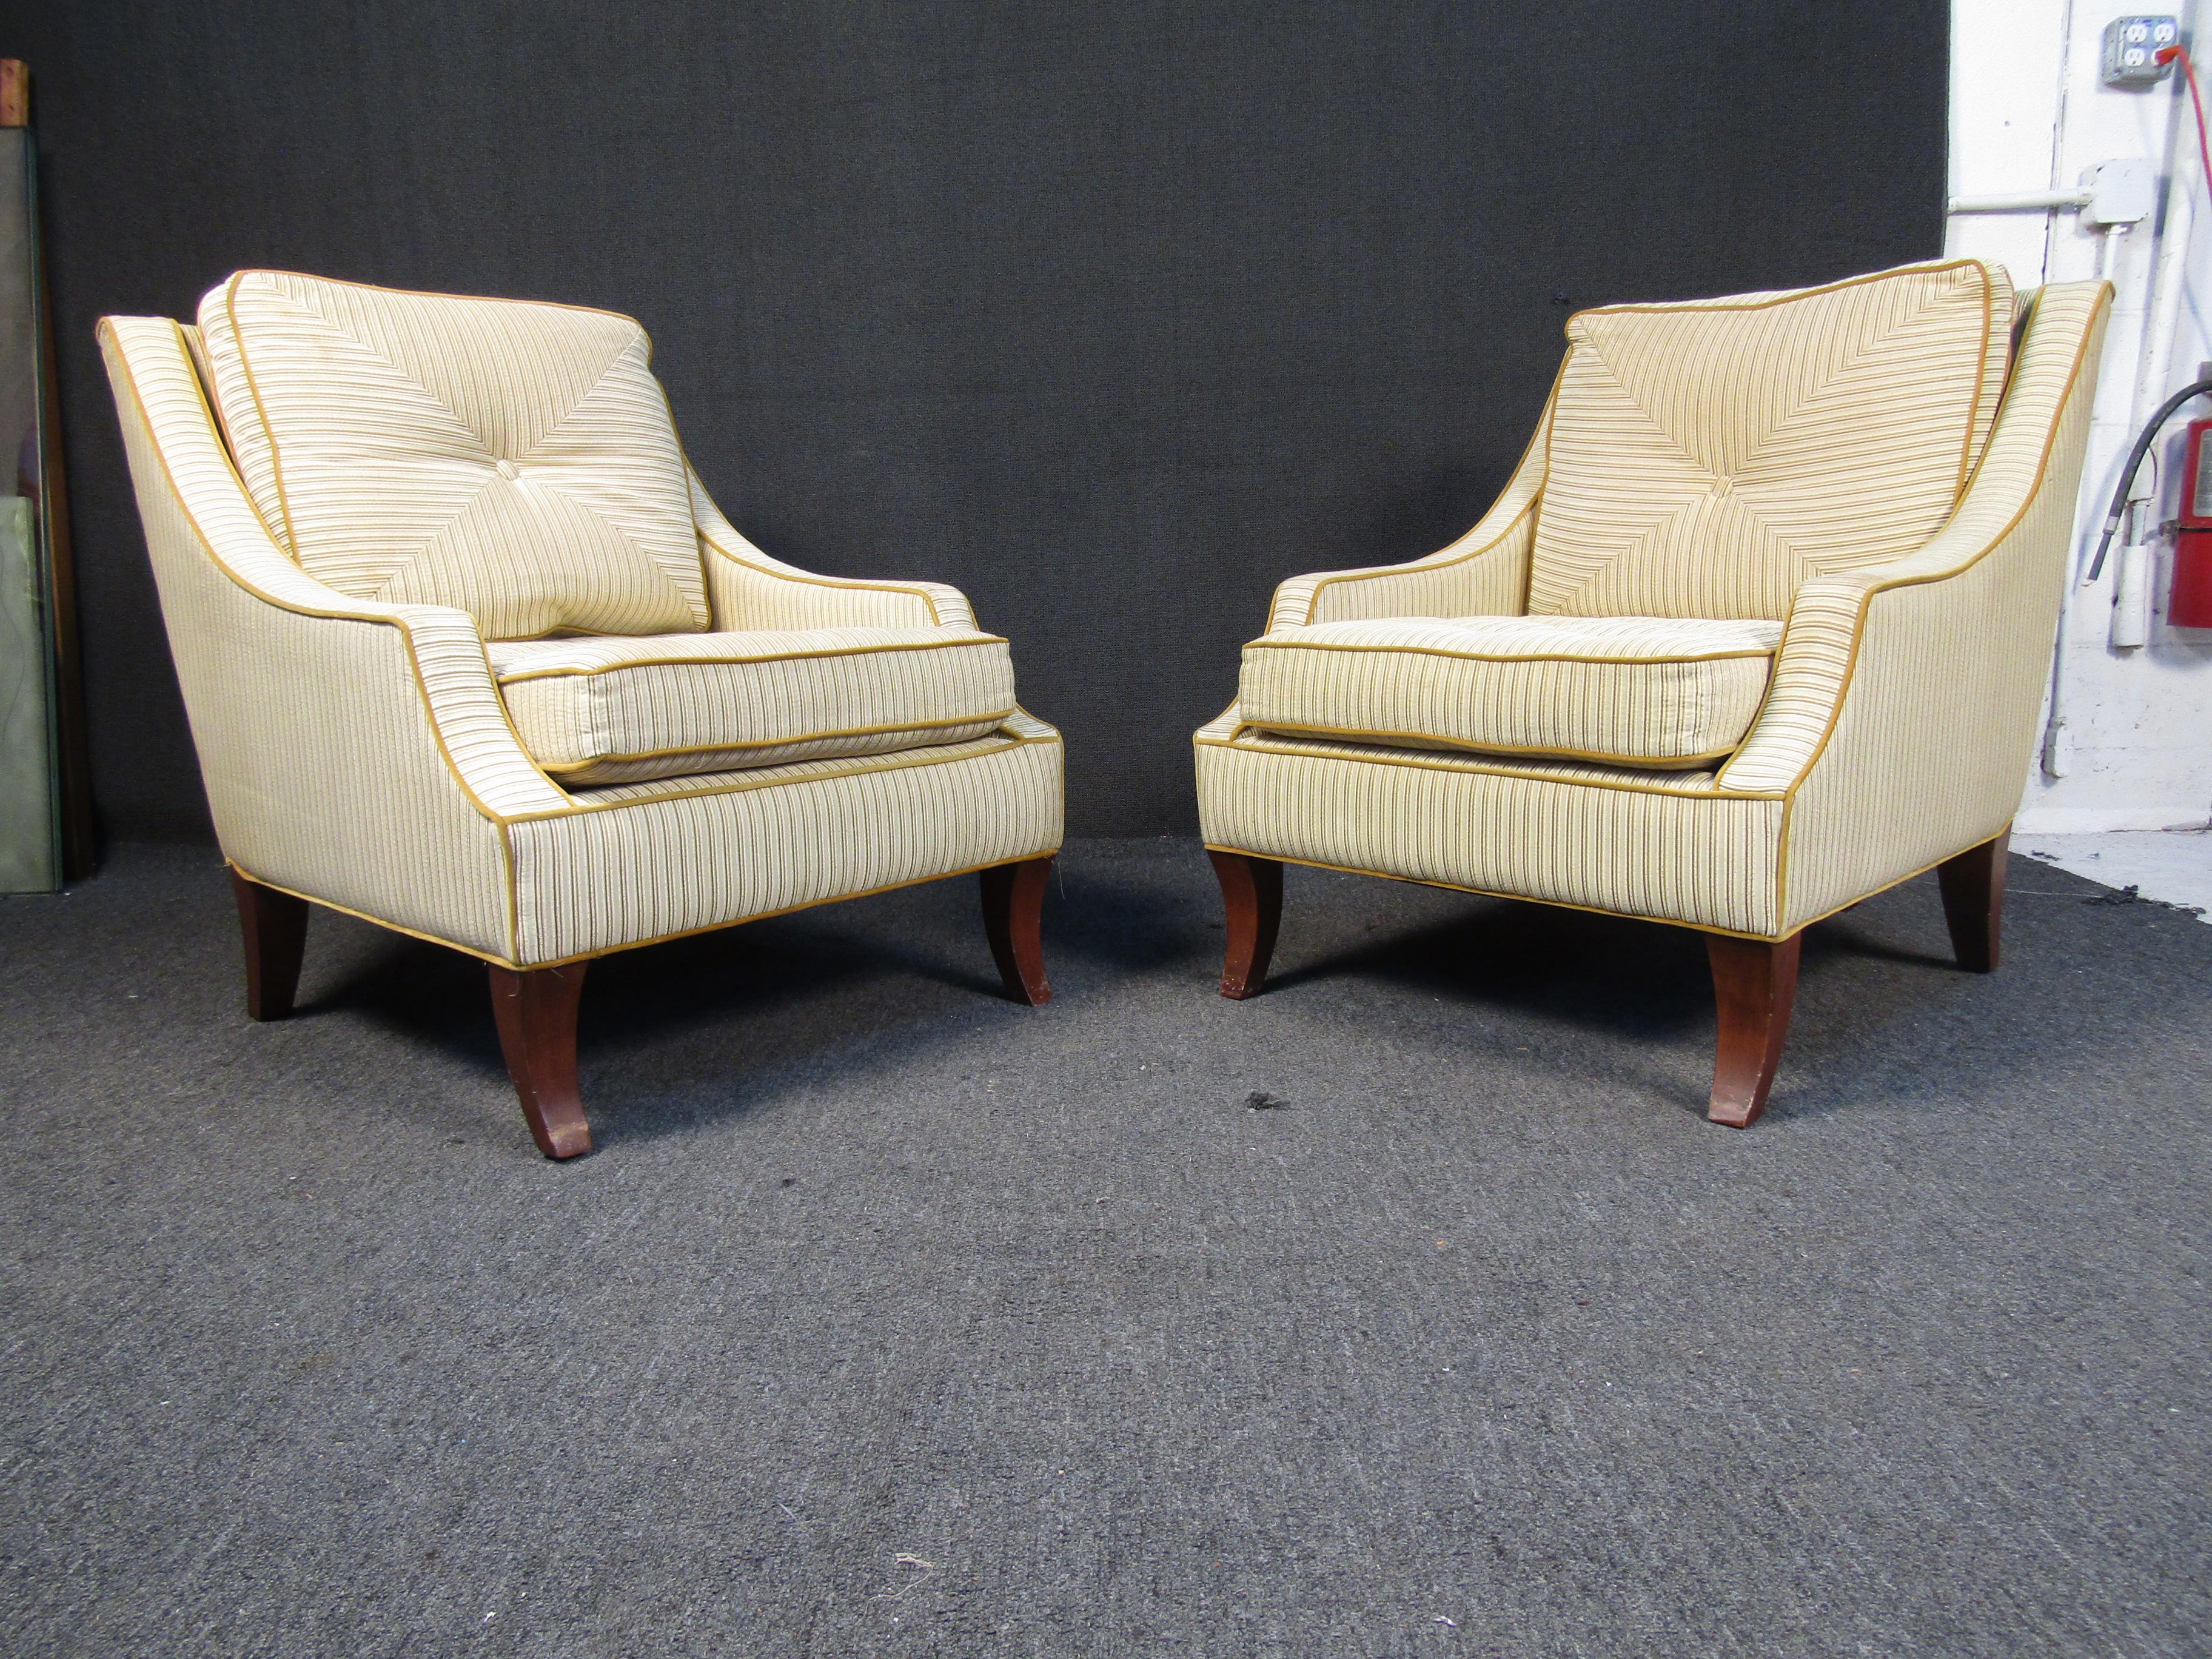 Einzigartige moderne Vintage-Sessel. Diese plüschigen Loungesessel sind mit einem bequemen Stoff gepolstert und haben spitz zulaufende Holzbeine. Die einzigartig geformten Stühle sind ein echter Gesprächsanlass. Perfekte Stühle für die